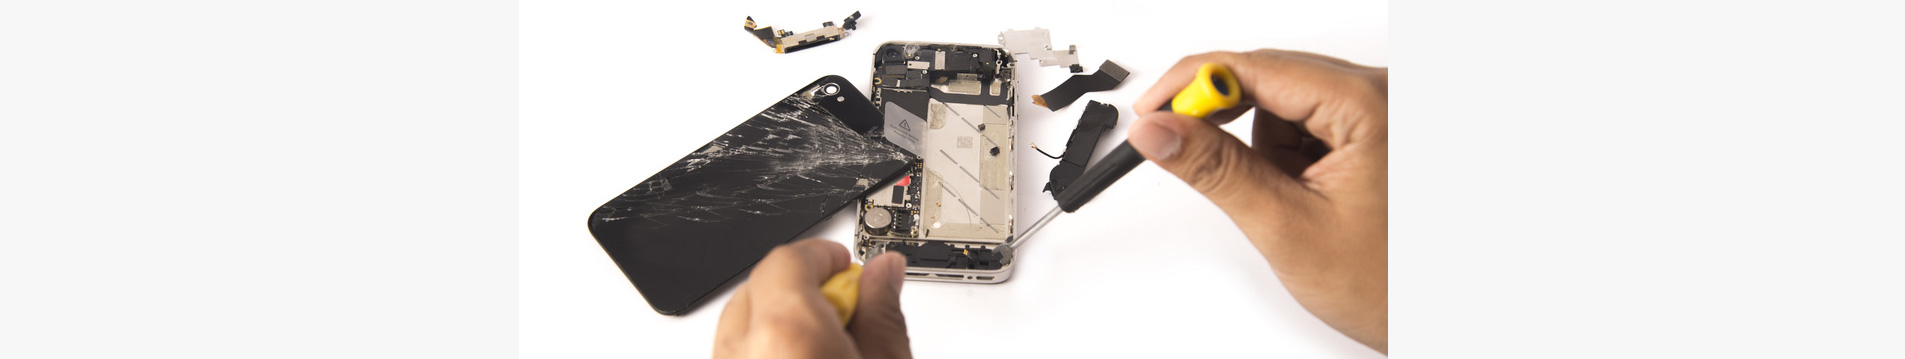 Mobile phone repairs